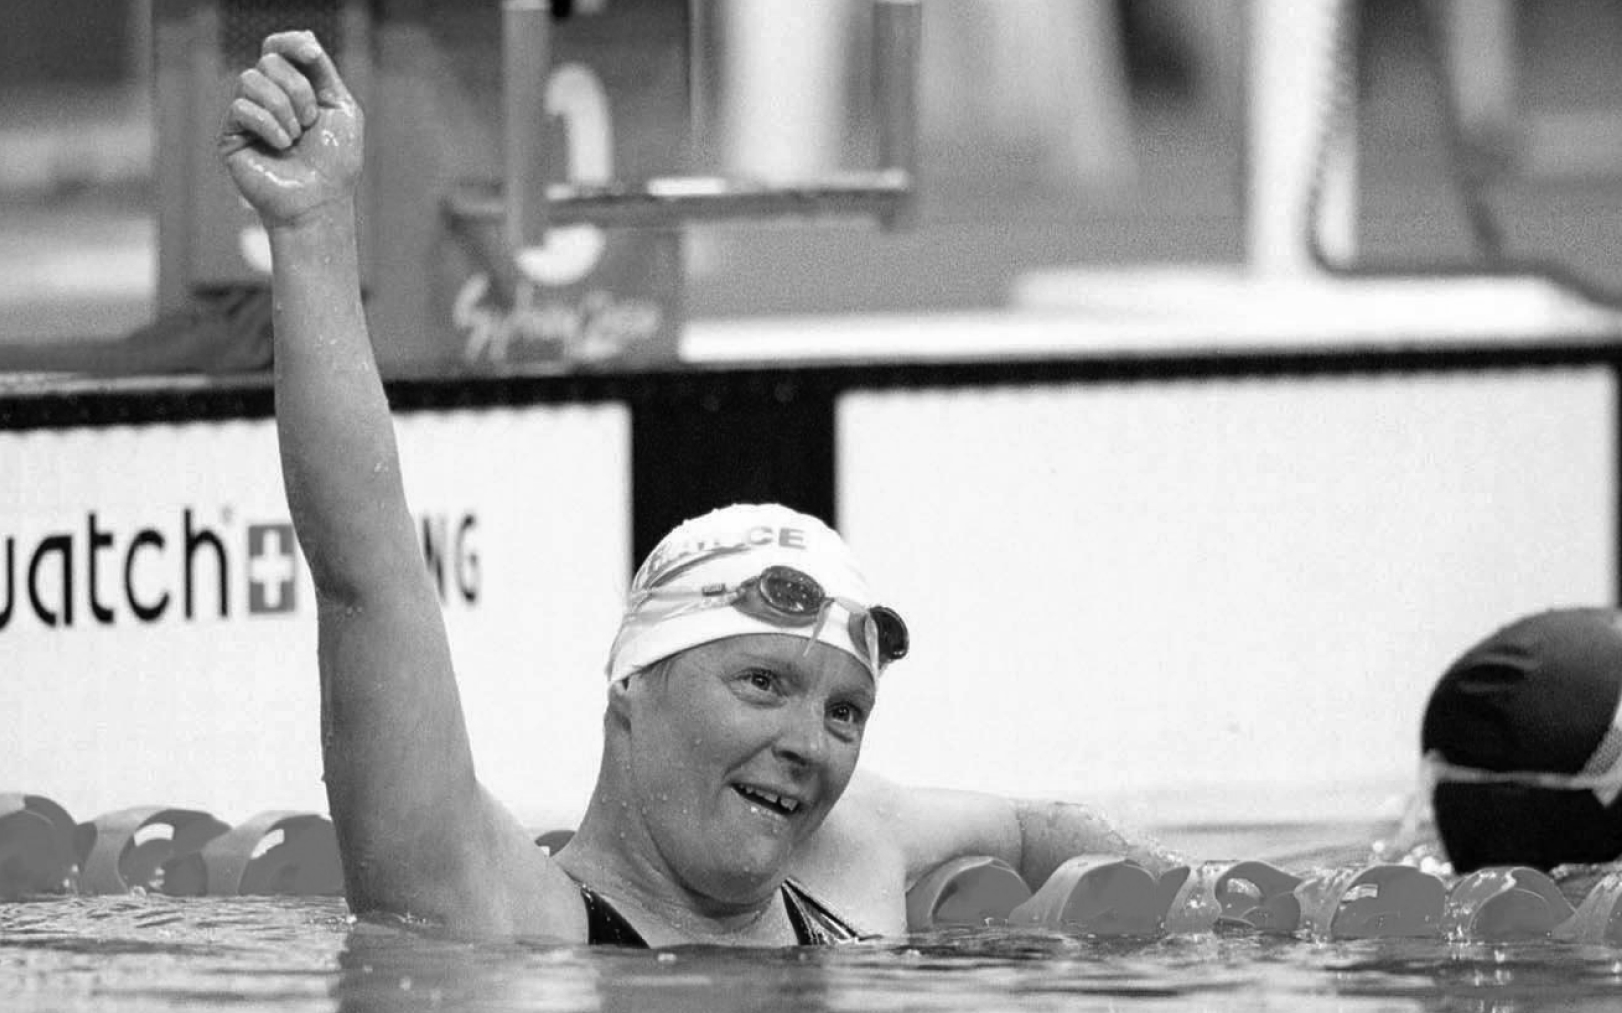 Le 20 octobre 2000, aux Jeux paralympiques de Sydney, Béatrice Hess remporte sa 18e médaille d’or paralympique en para-natation. Presse Sports/Tom Putt